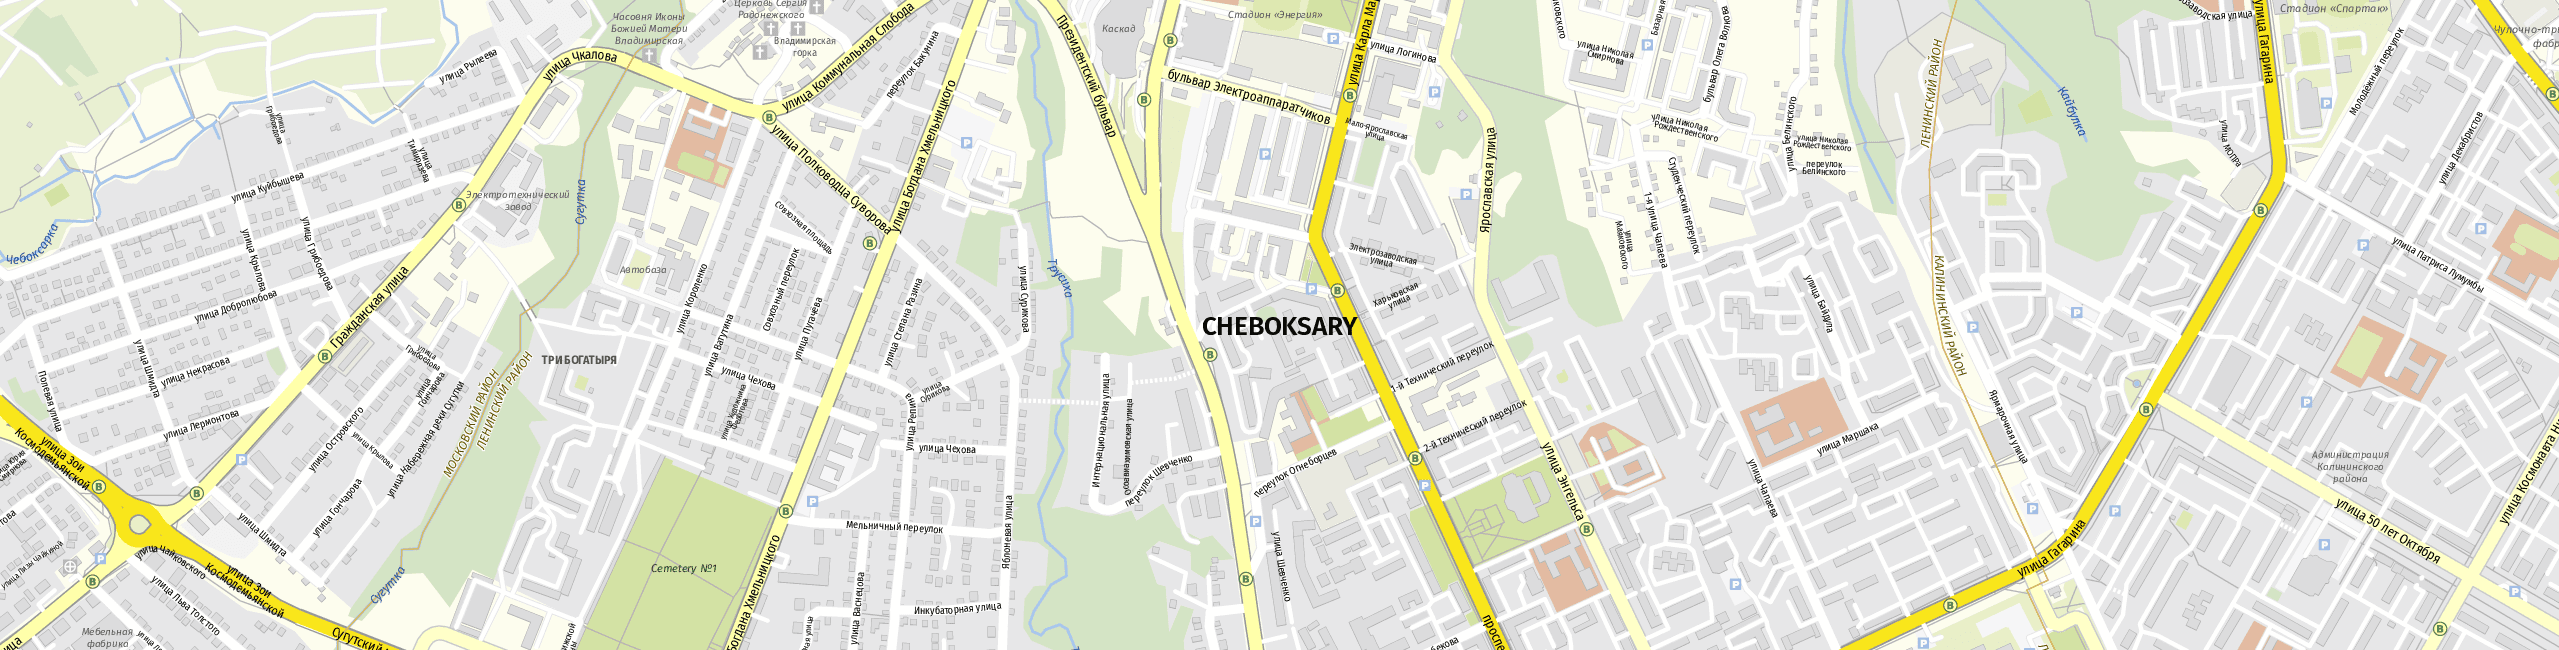 Stadtplan Cheboksary zum Downloaden.